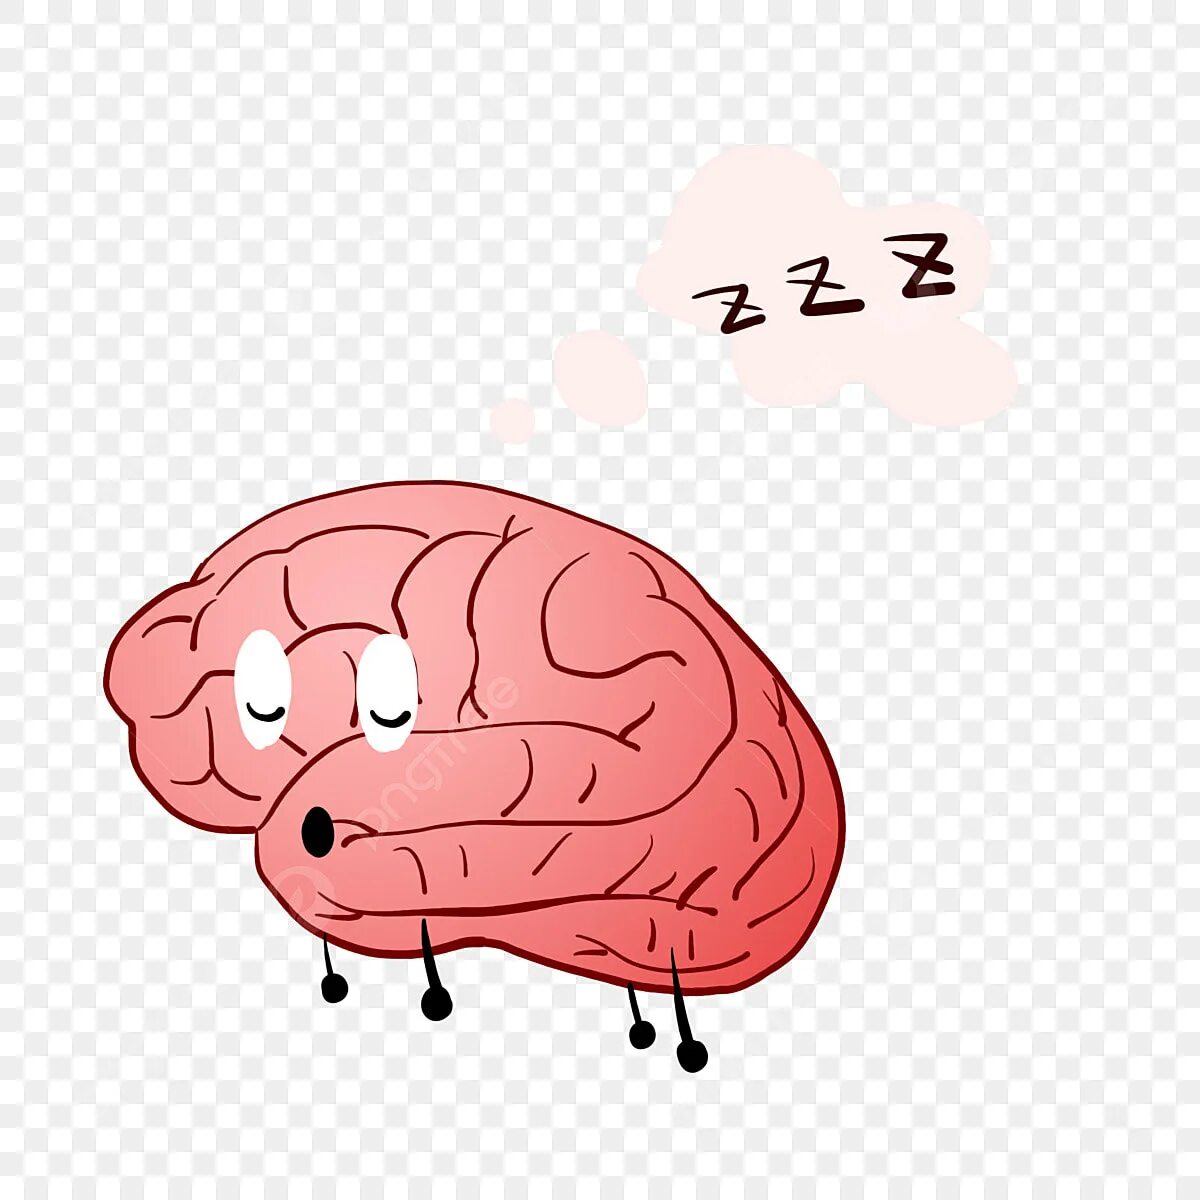 Sleeping brains. Ленивый мозг. Головной мозг и сон.